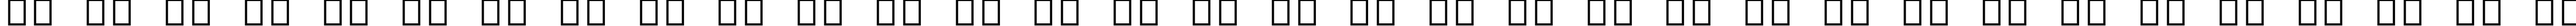 Пример написания русского алфавита шрифтом Arial Alternative Symbol